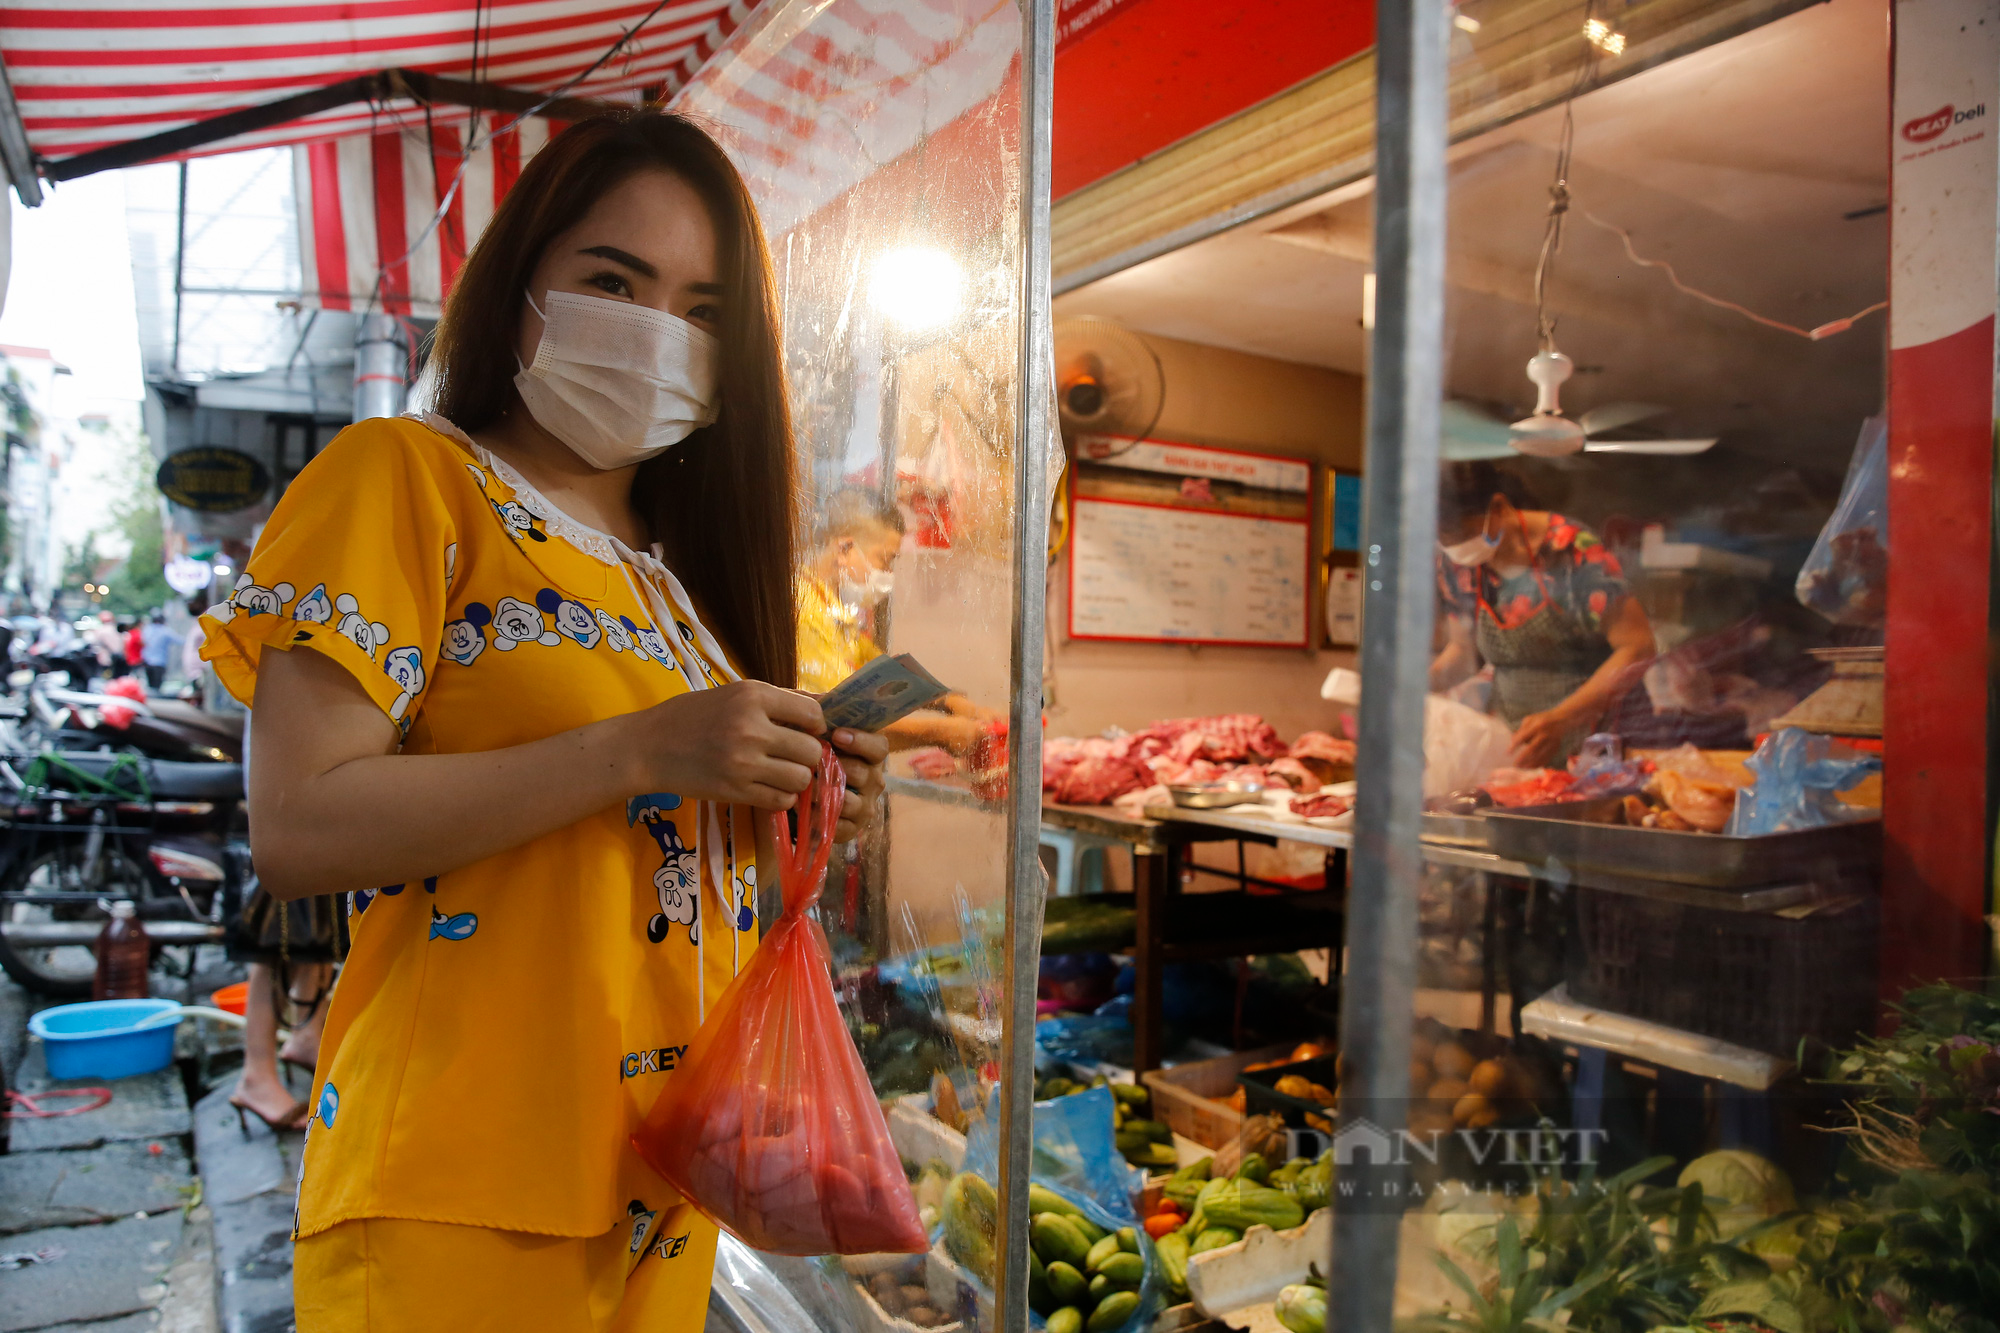 Hà Nội: Chợ dân sinh phố cổ siết chặt các biện pháp phòng, chống dịch Covid-19 - Ảnh 4.